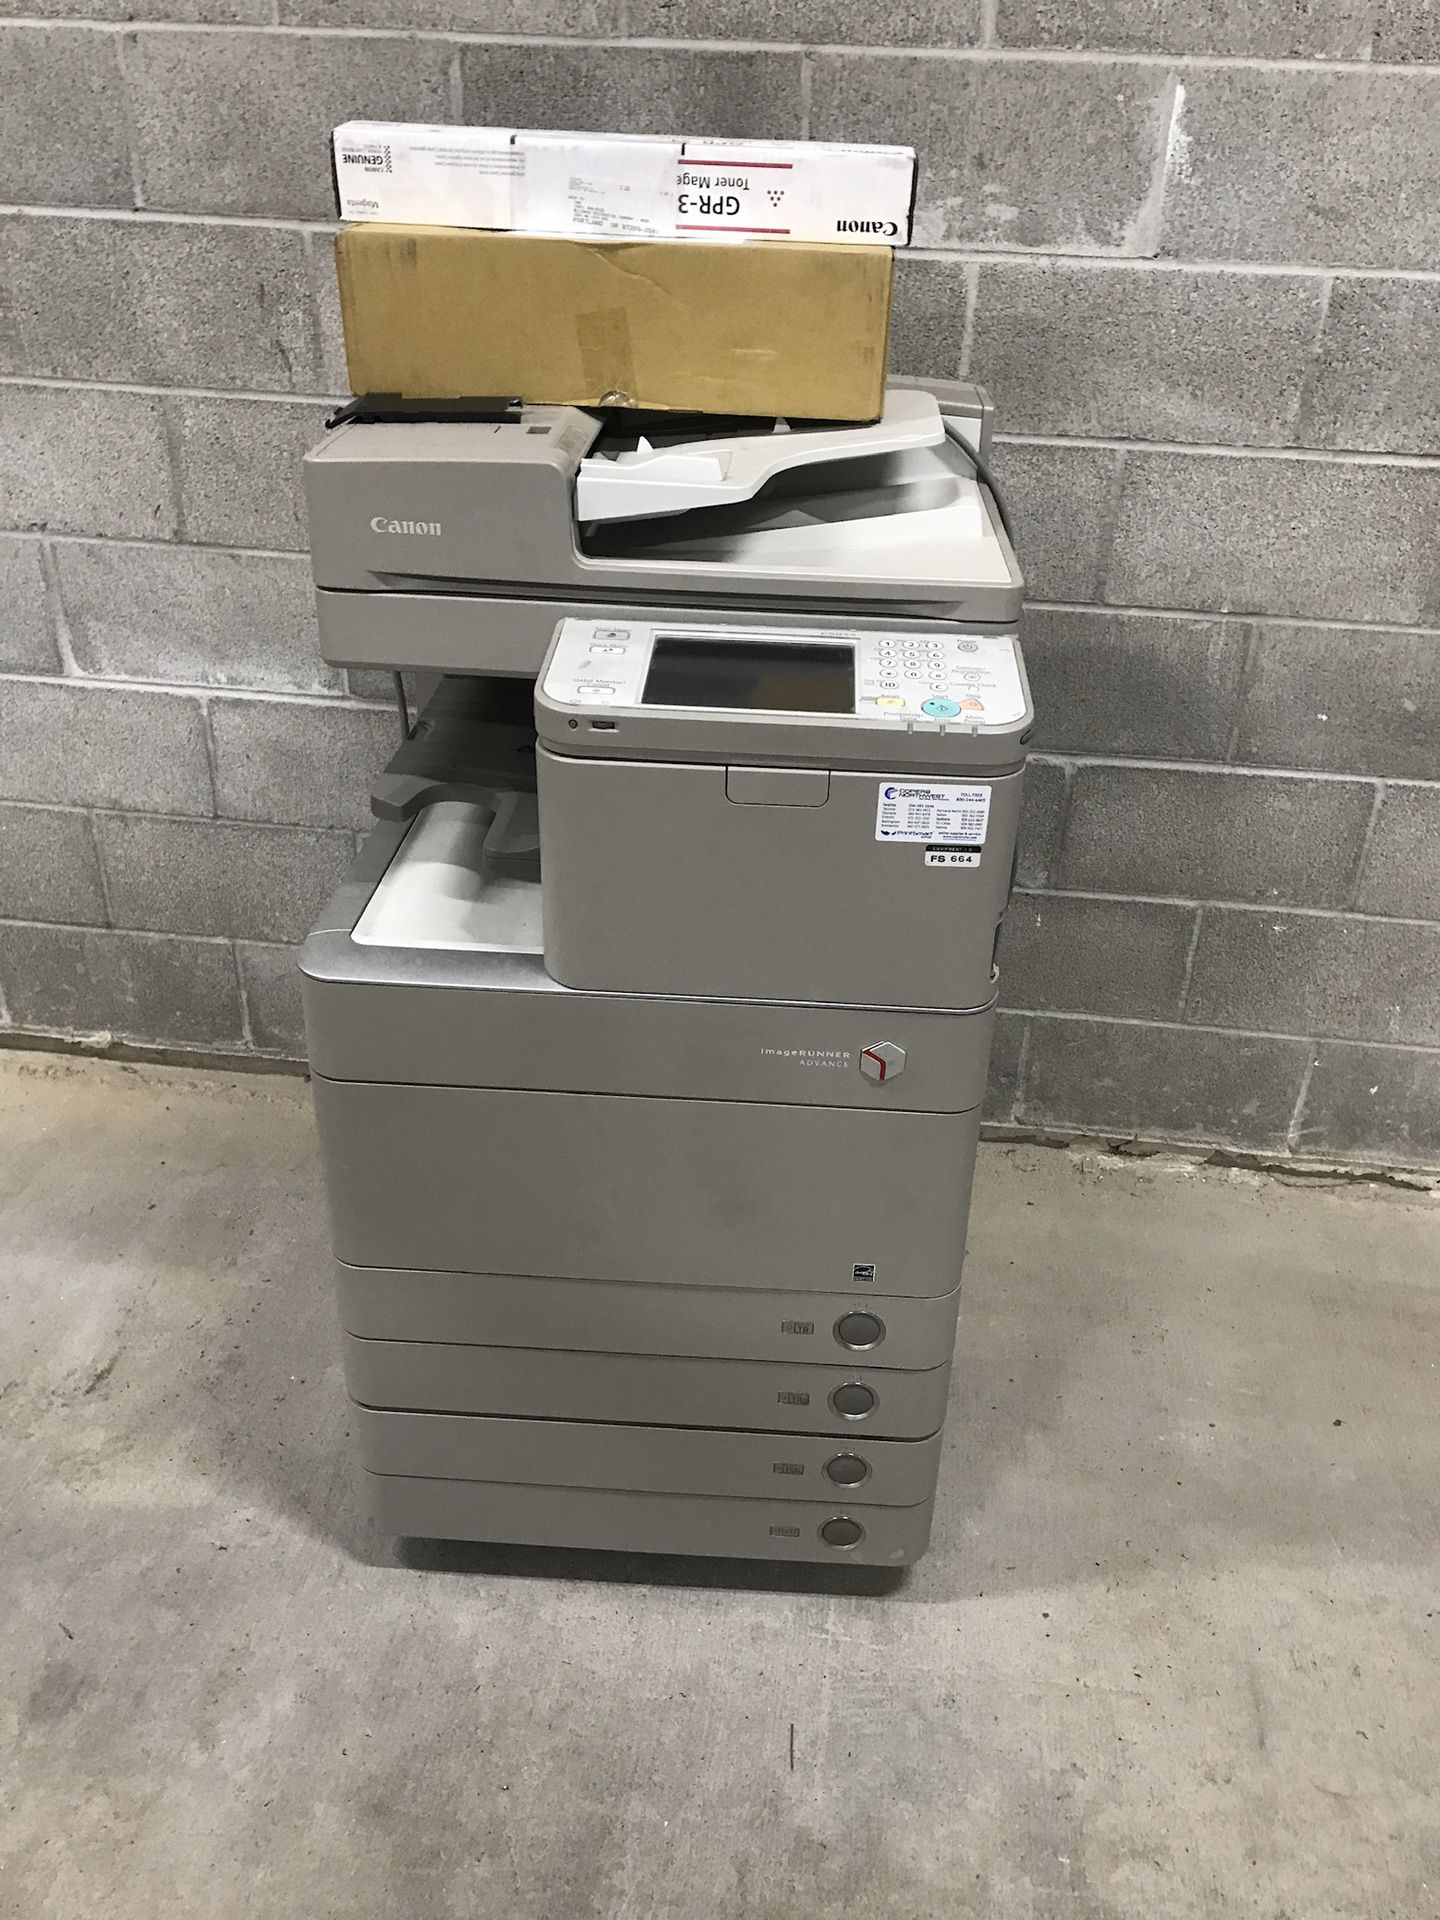 Cannon C5035 printer